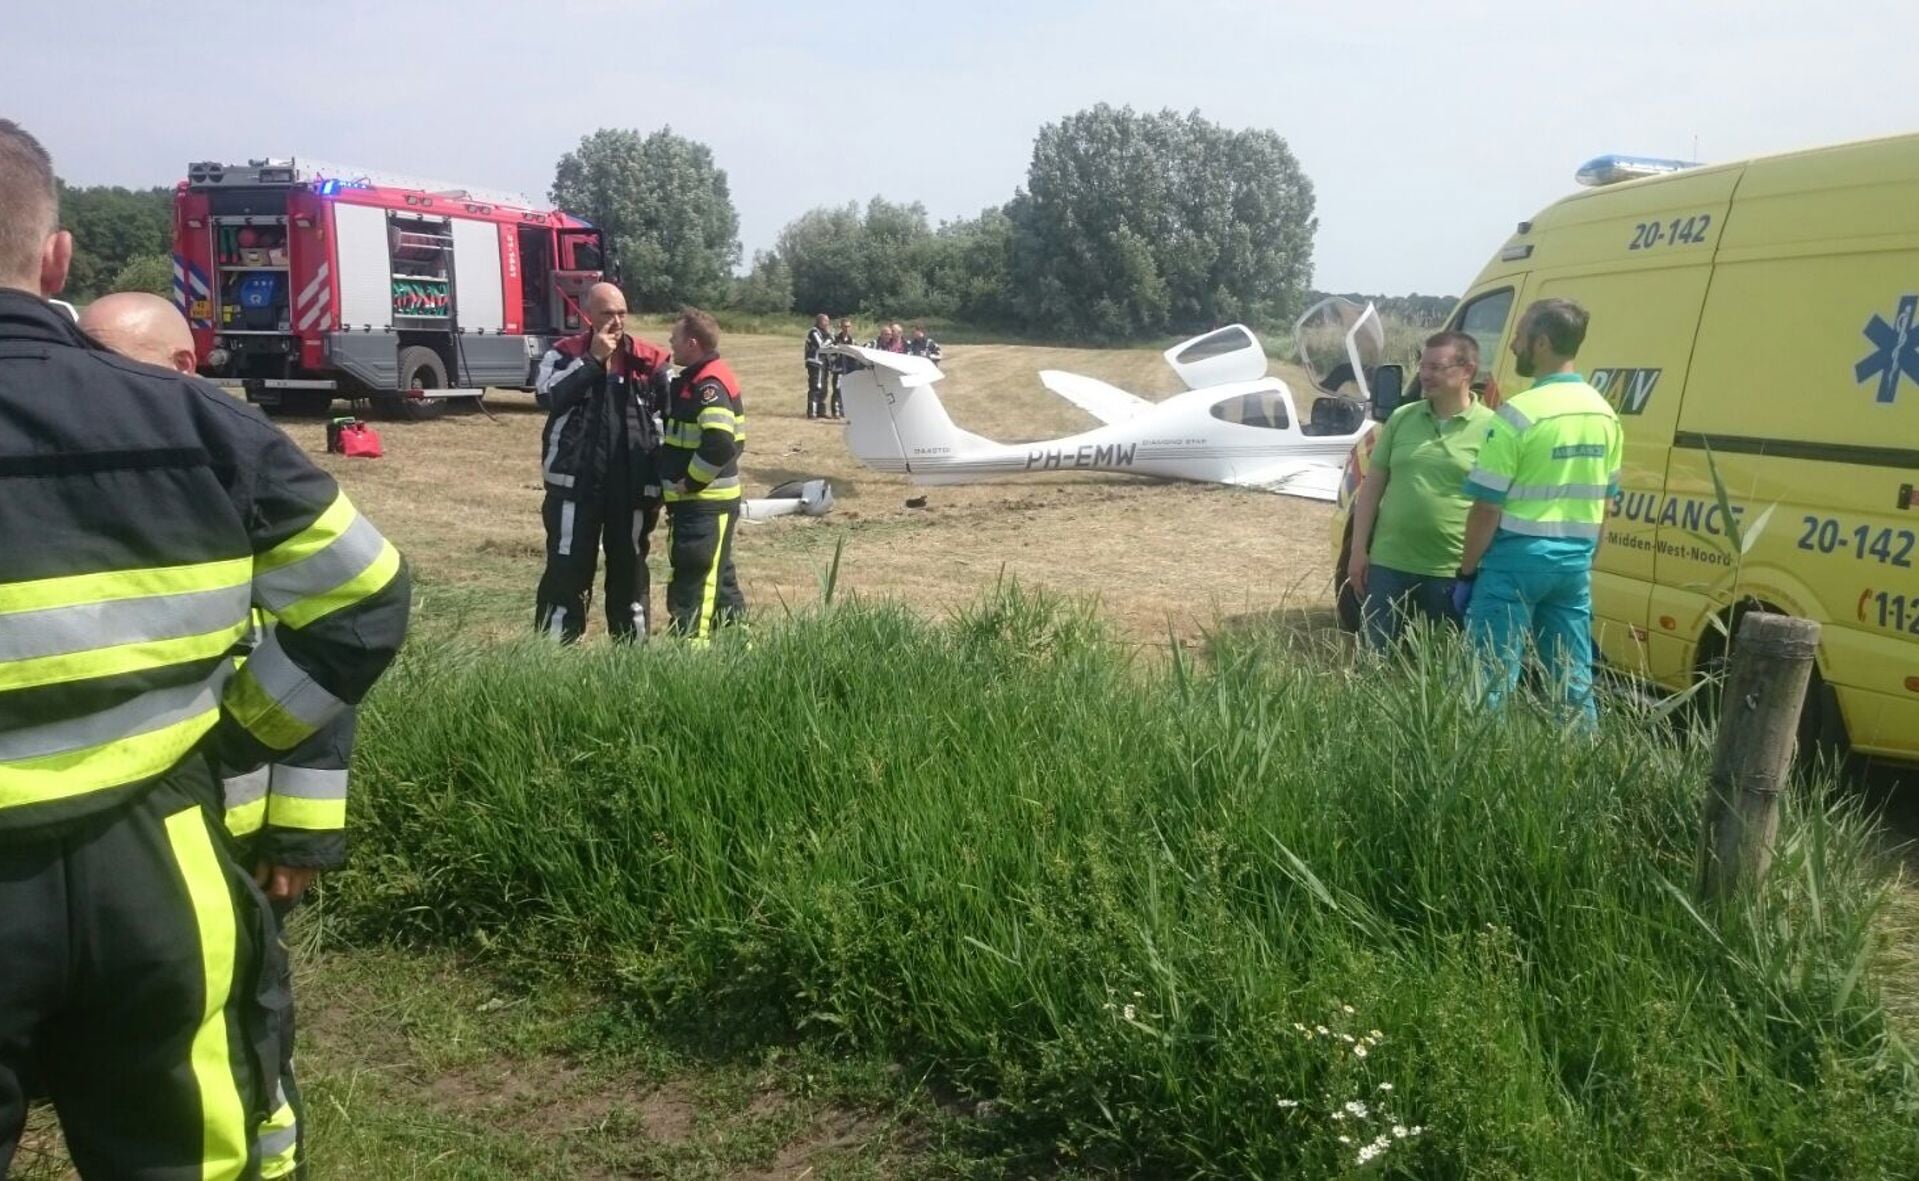 Zicht op de crashlocatie aan de Broeksteeg in het buitengebied tussen Esch en Haaren. (Foto: Pål Jansen).